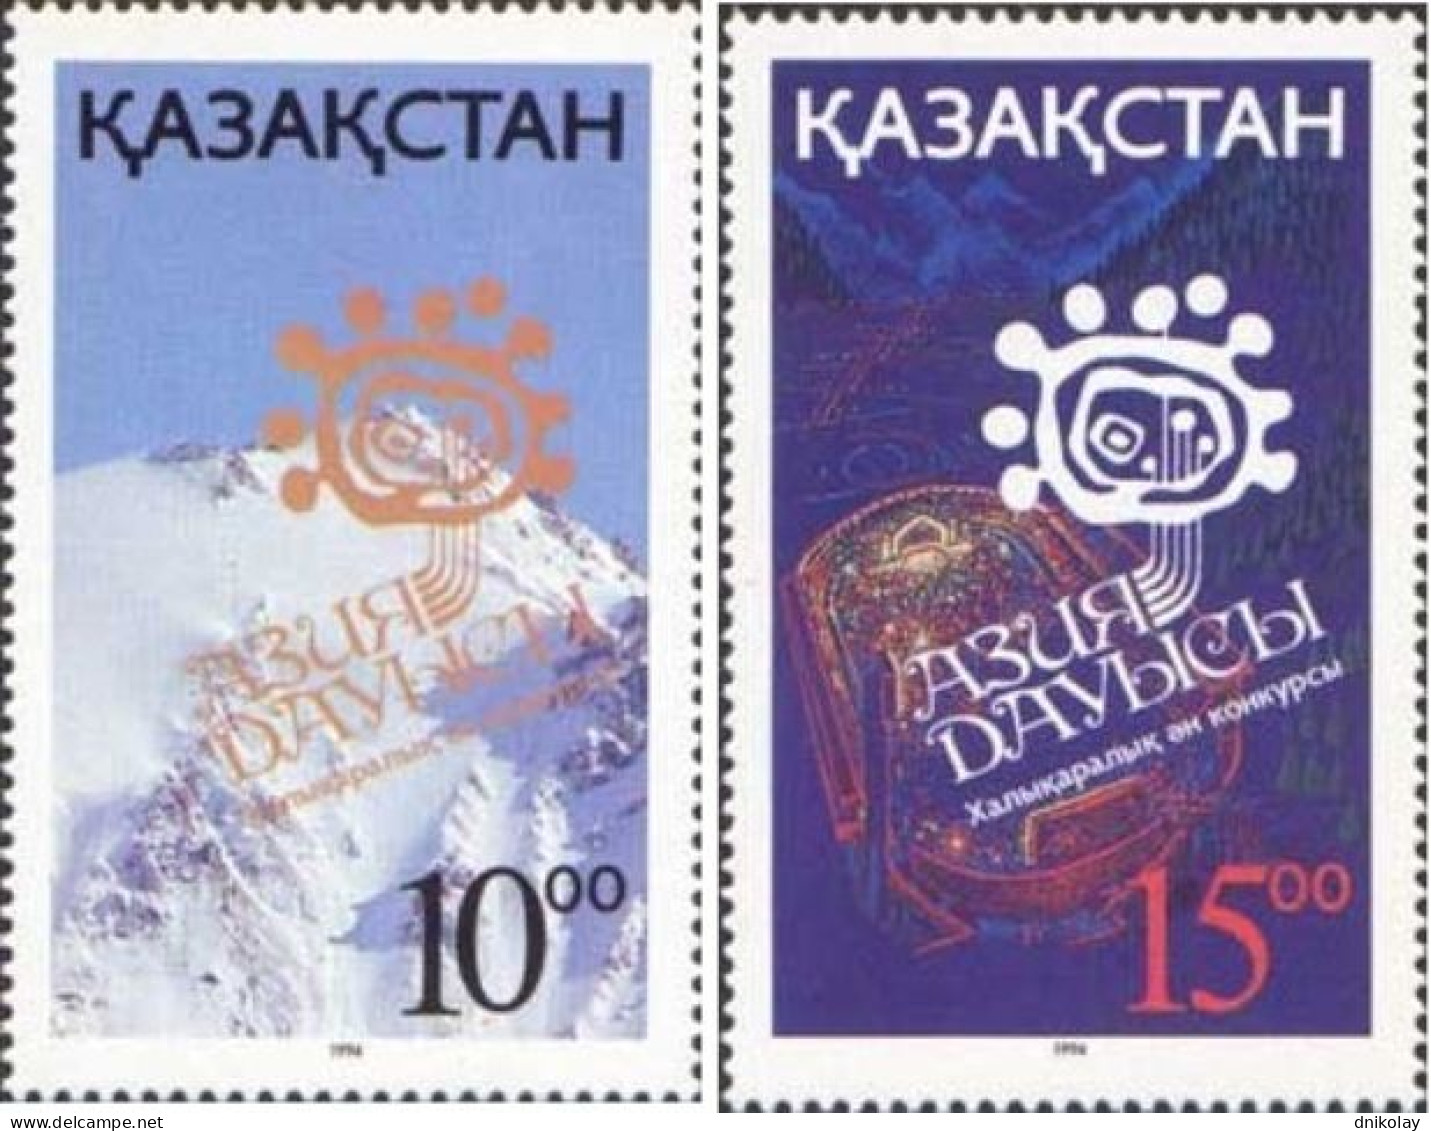 1994 53 Kazakhstan The 5th "Asia Dauysy" International Music Festival, Almaty MNH - Kazakhstan